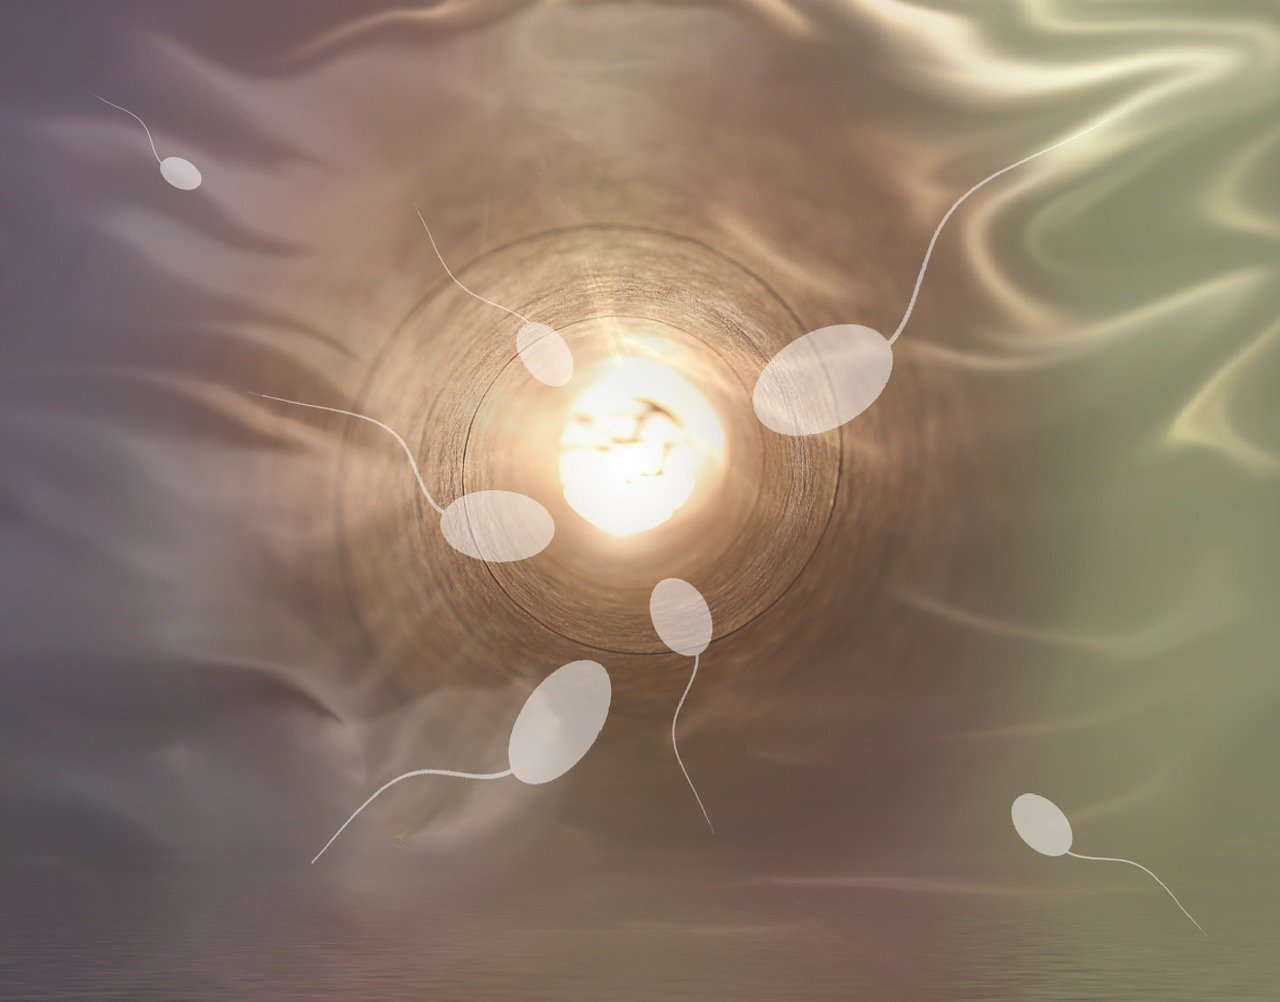 Des vitamines dans le sperme ! Mythe ou réalité ?